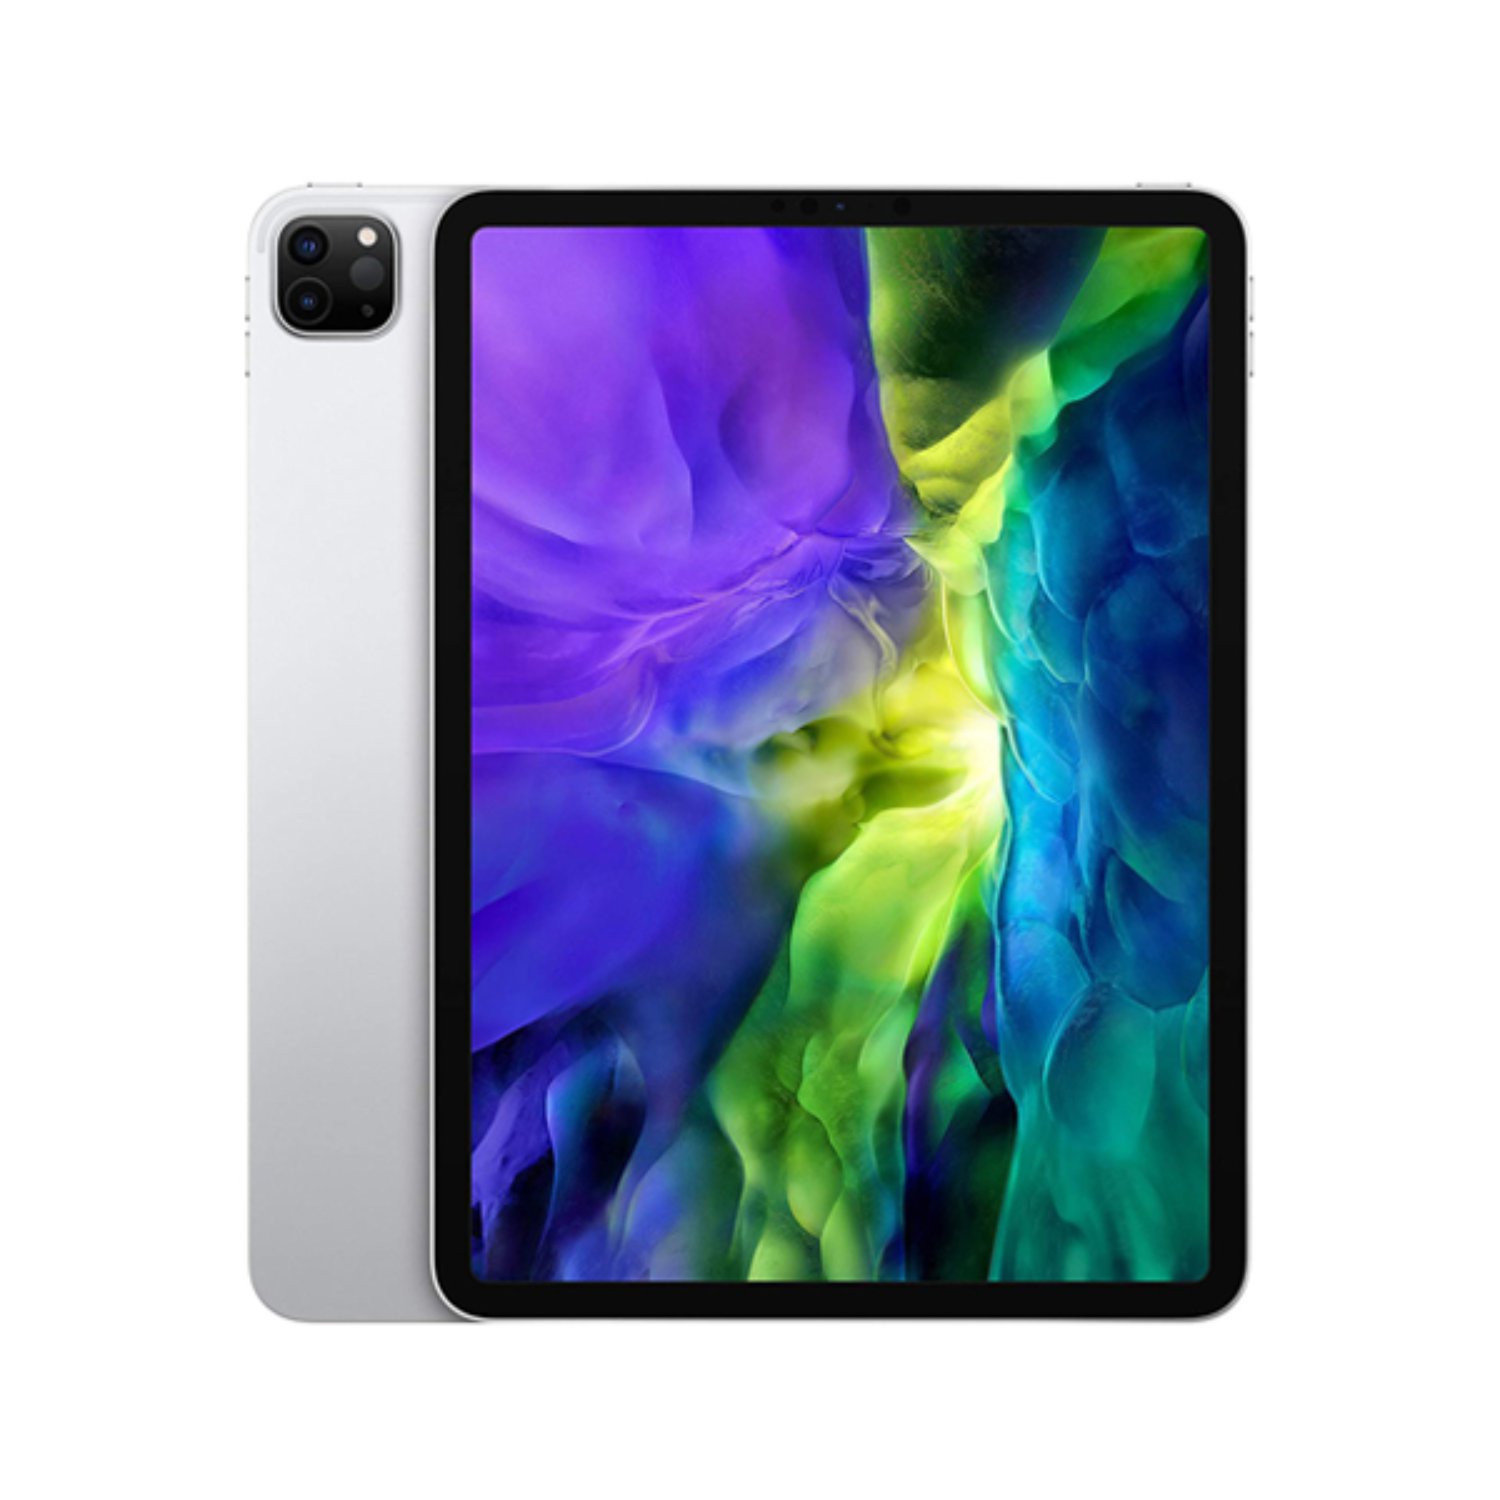 آیپد پرو 11 اینچ 2020 اپل حافظه 128 گیگابایت 4G مدل Apple iPad Pro 11 inch 2th Gen 6GB-128GB 4G 2020  